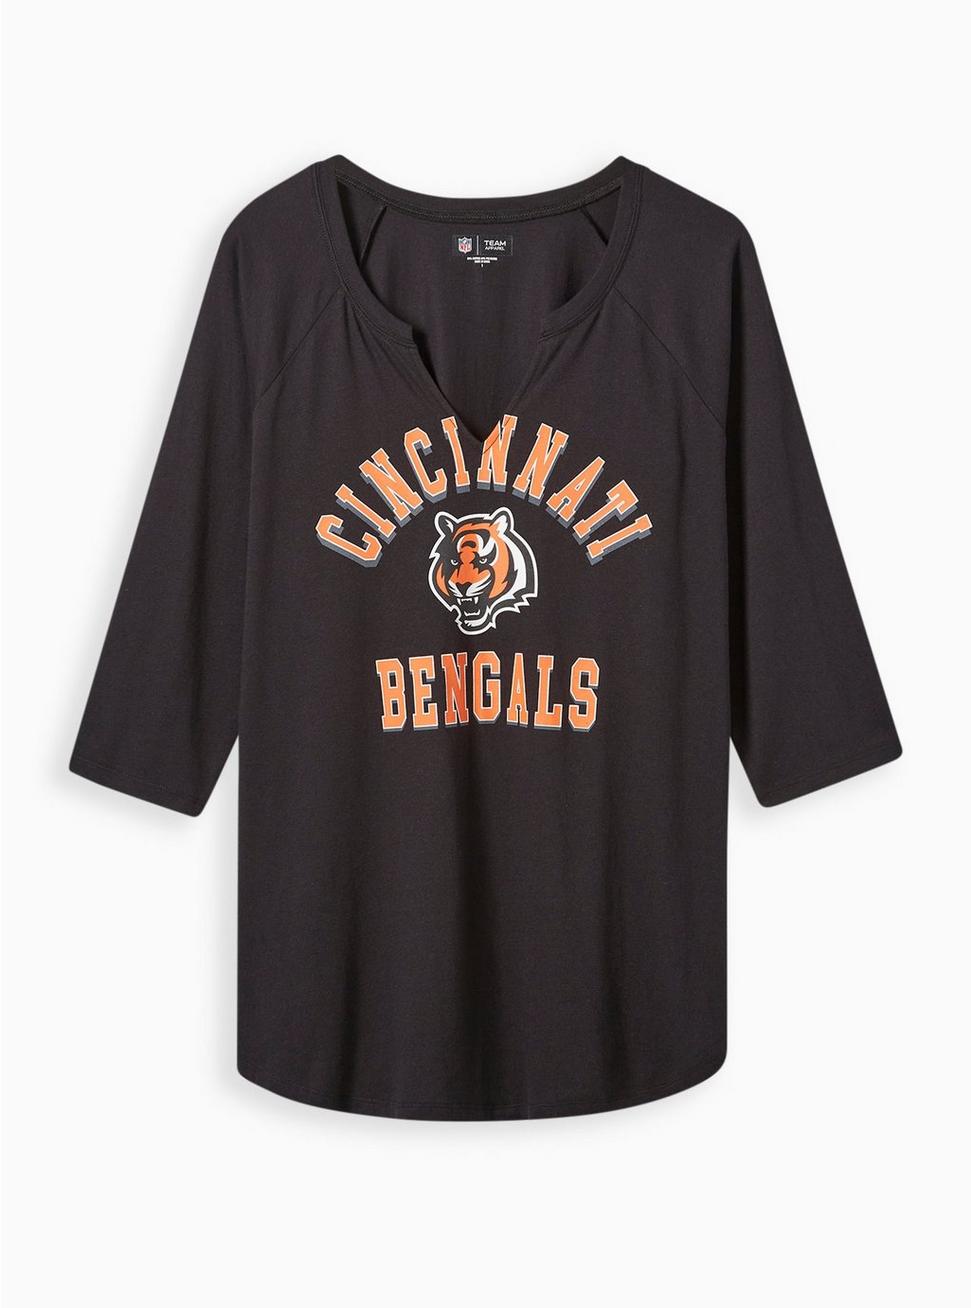 NFL Cincinnati Bengals Classic Fit Cotton Long Sleeve Raglan Tee, DEEP BLACK, hi-res